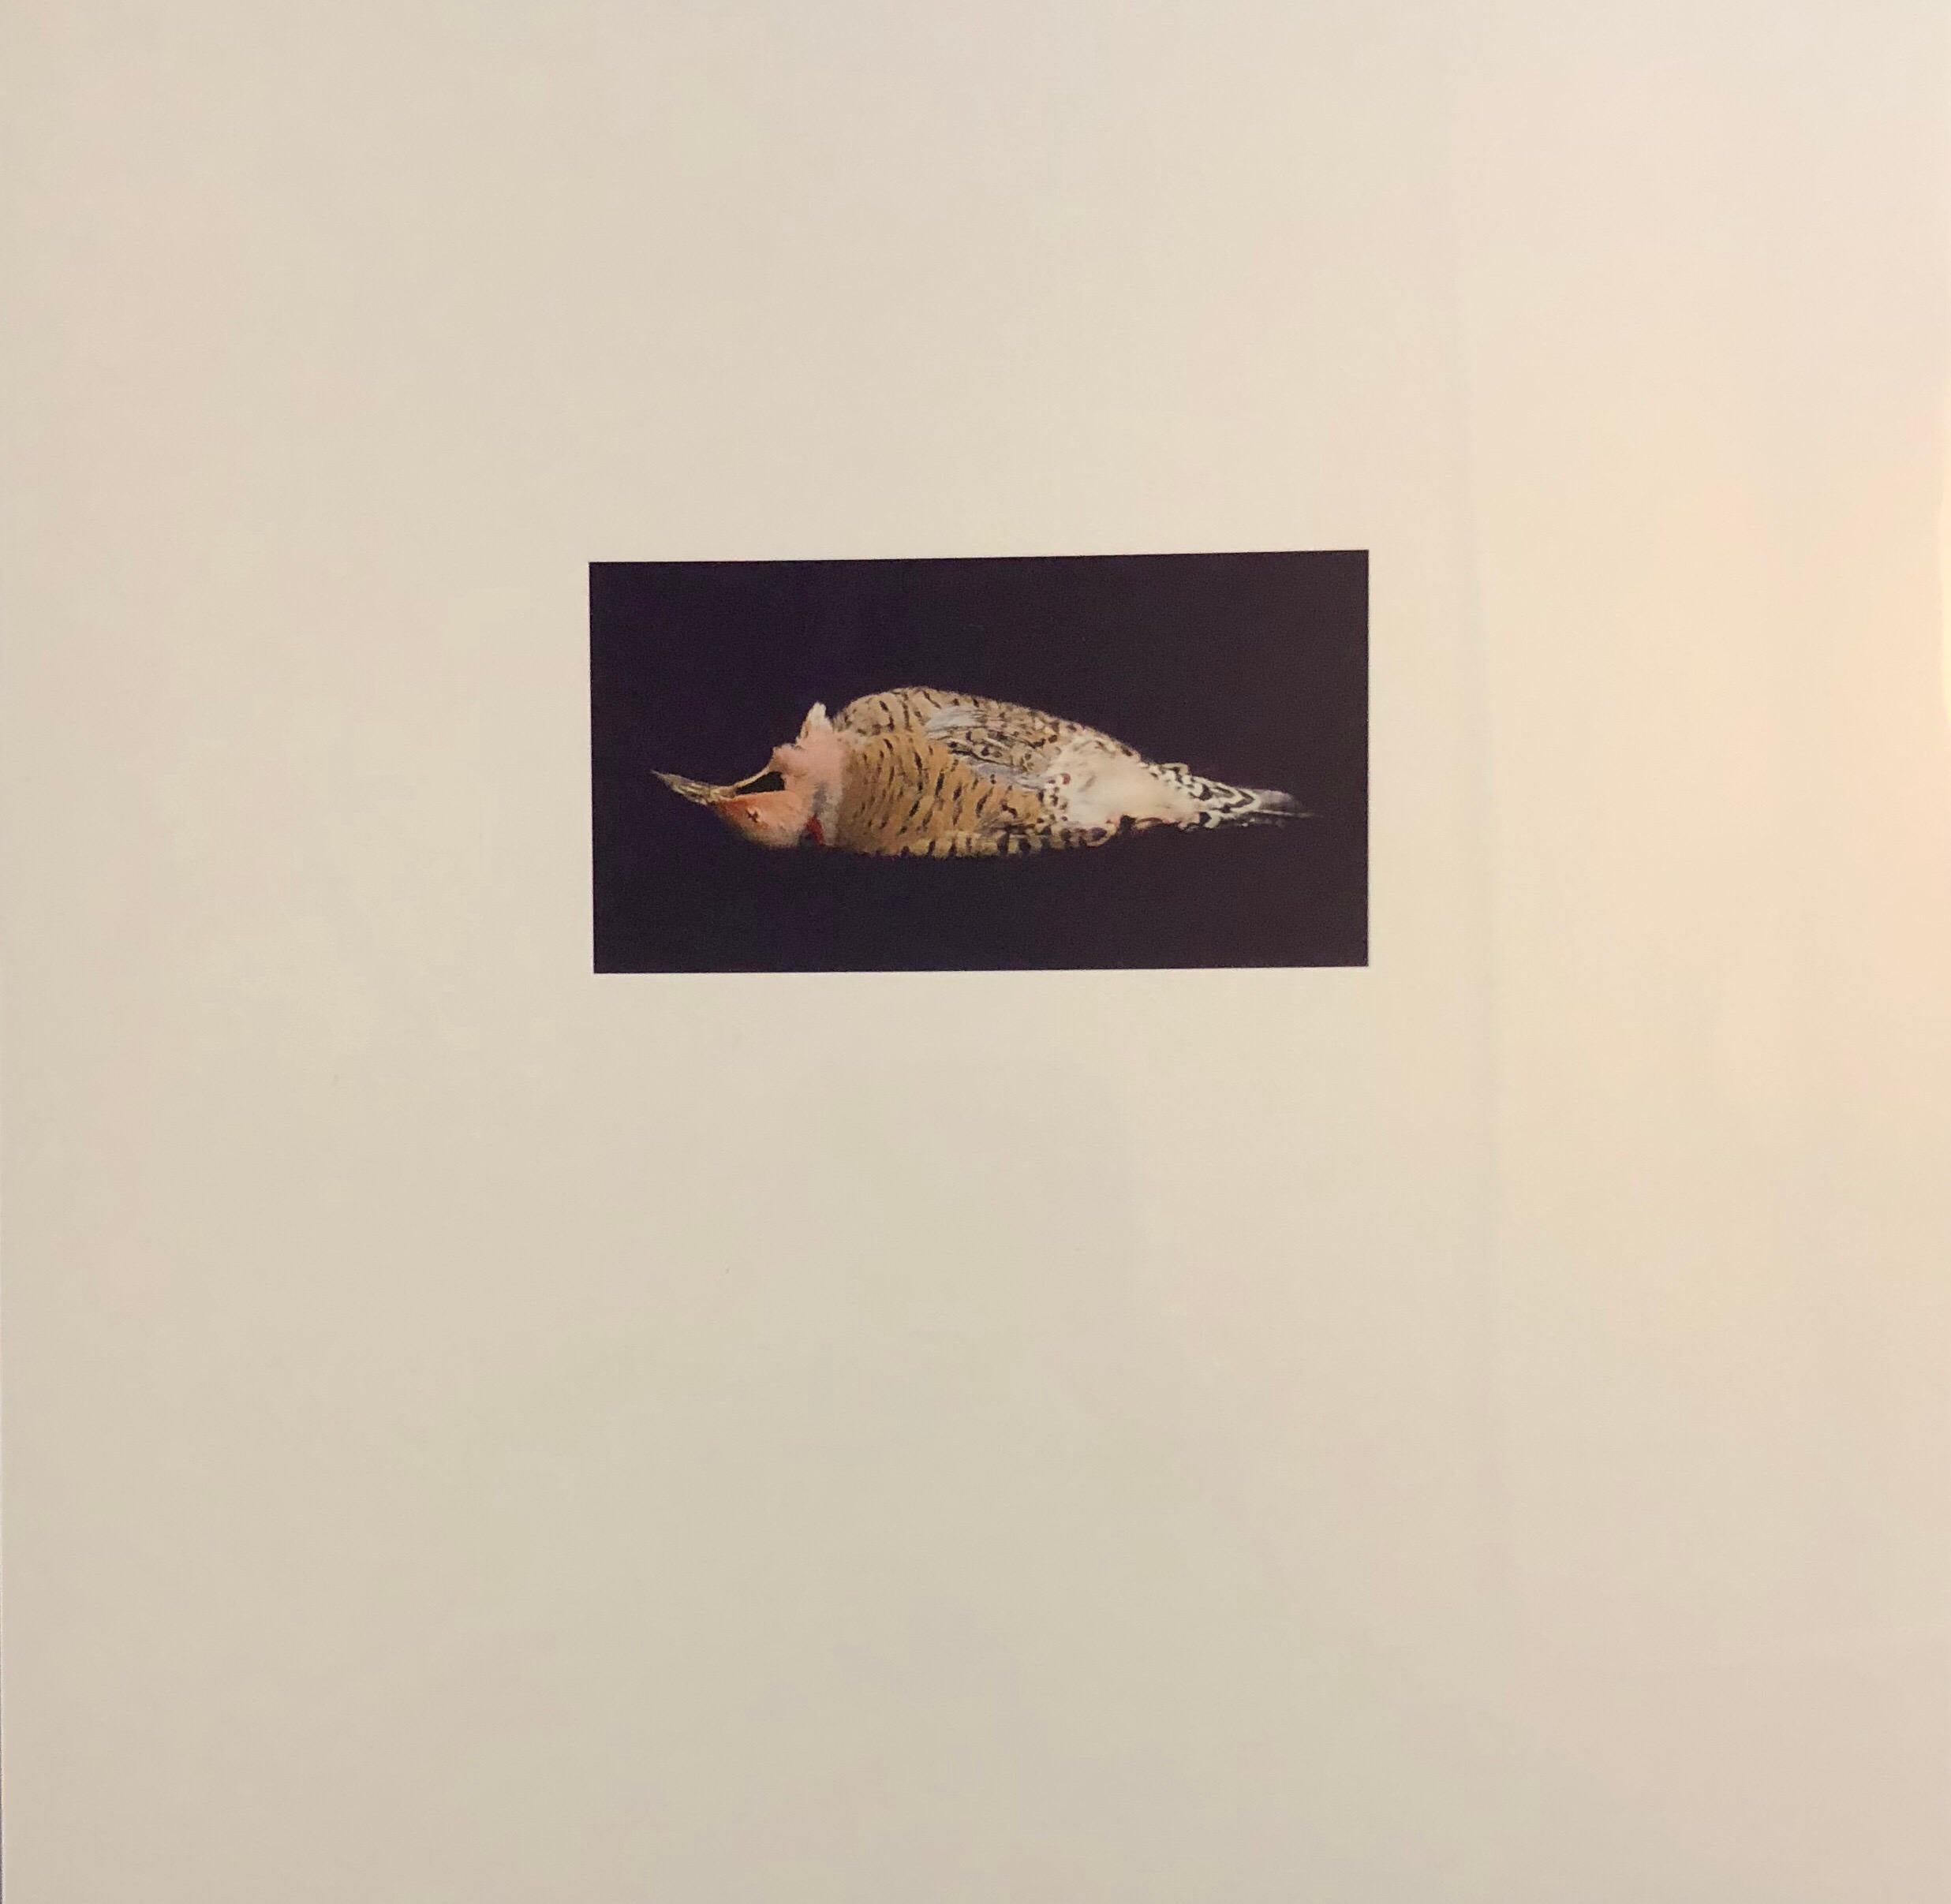 Brenda Zlamany Color Photograph - Birds, Cibachrome Photograph Print, Signed Conceptual Art